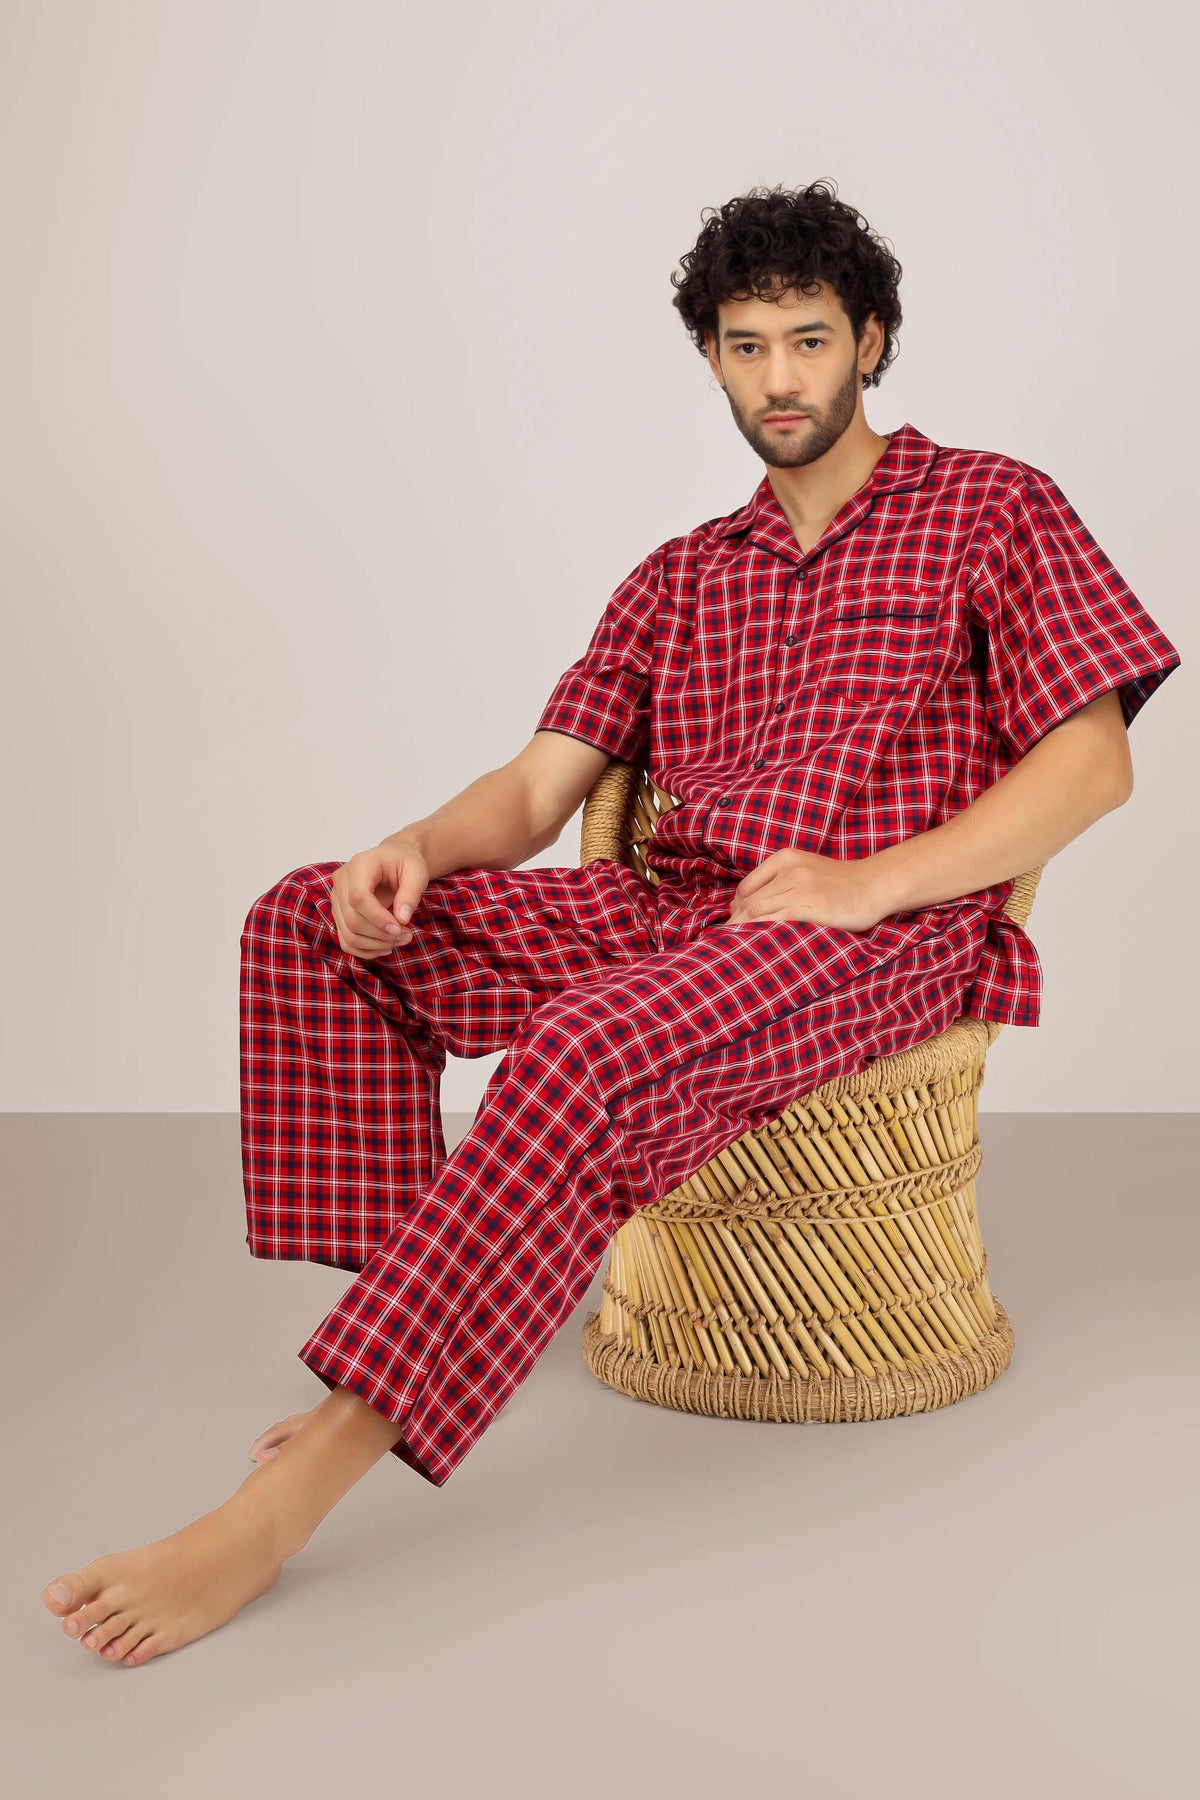 Aldo, Men's Pyjama Suit